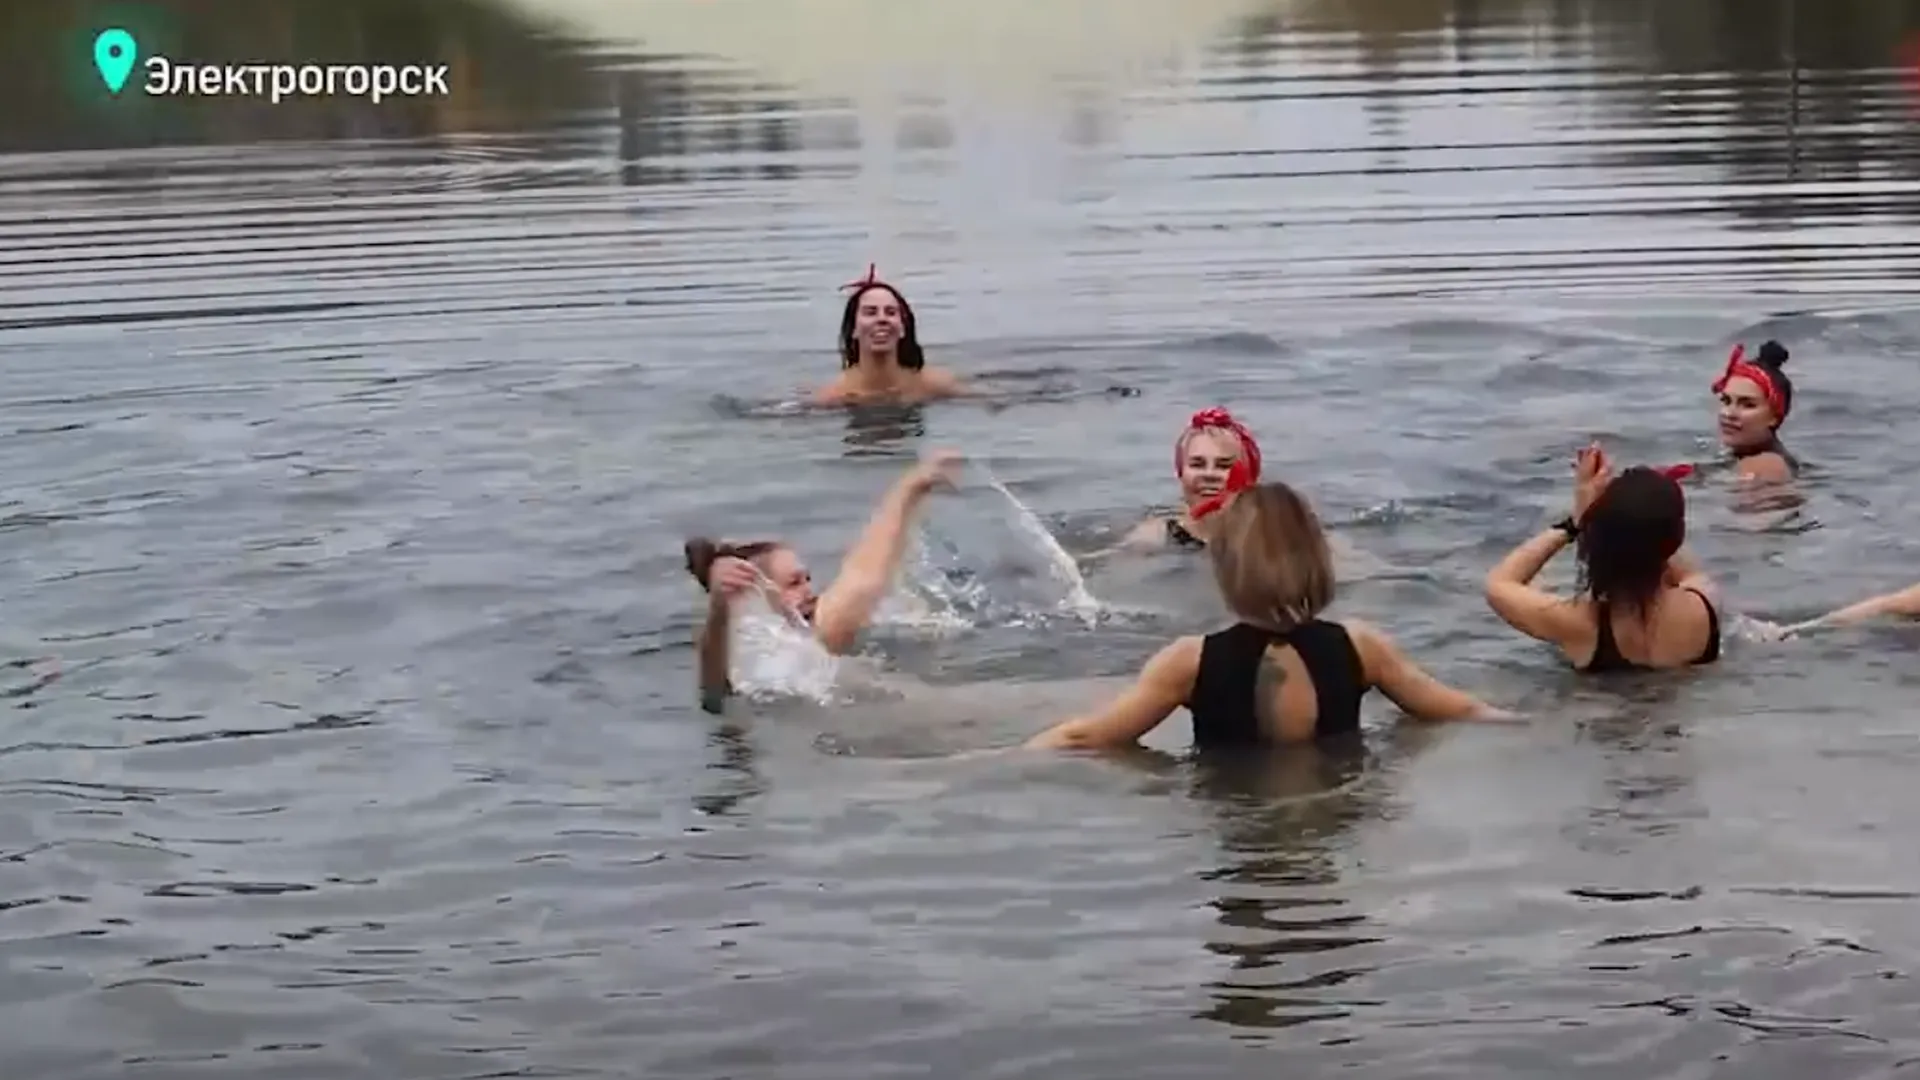 Первый зимний заплыв провели любители моржевания в Подмосковье